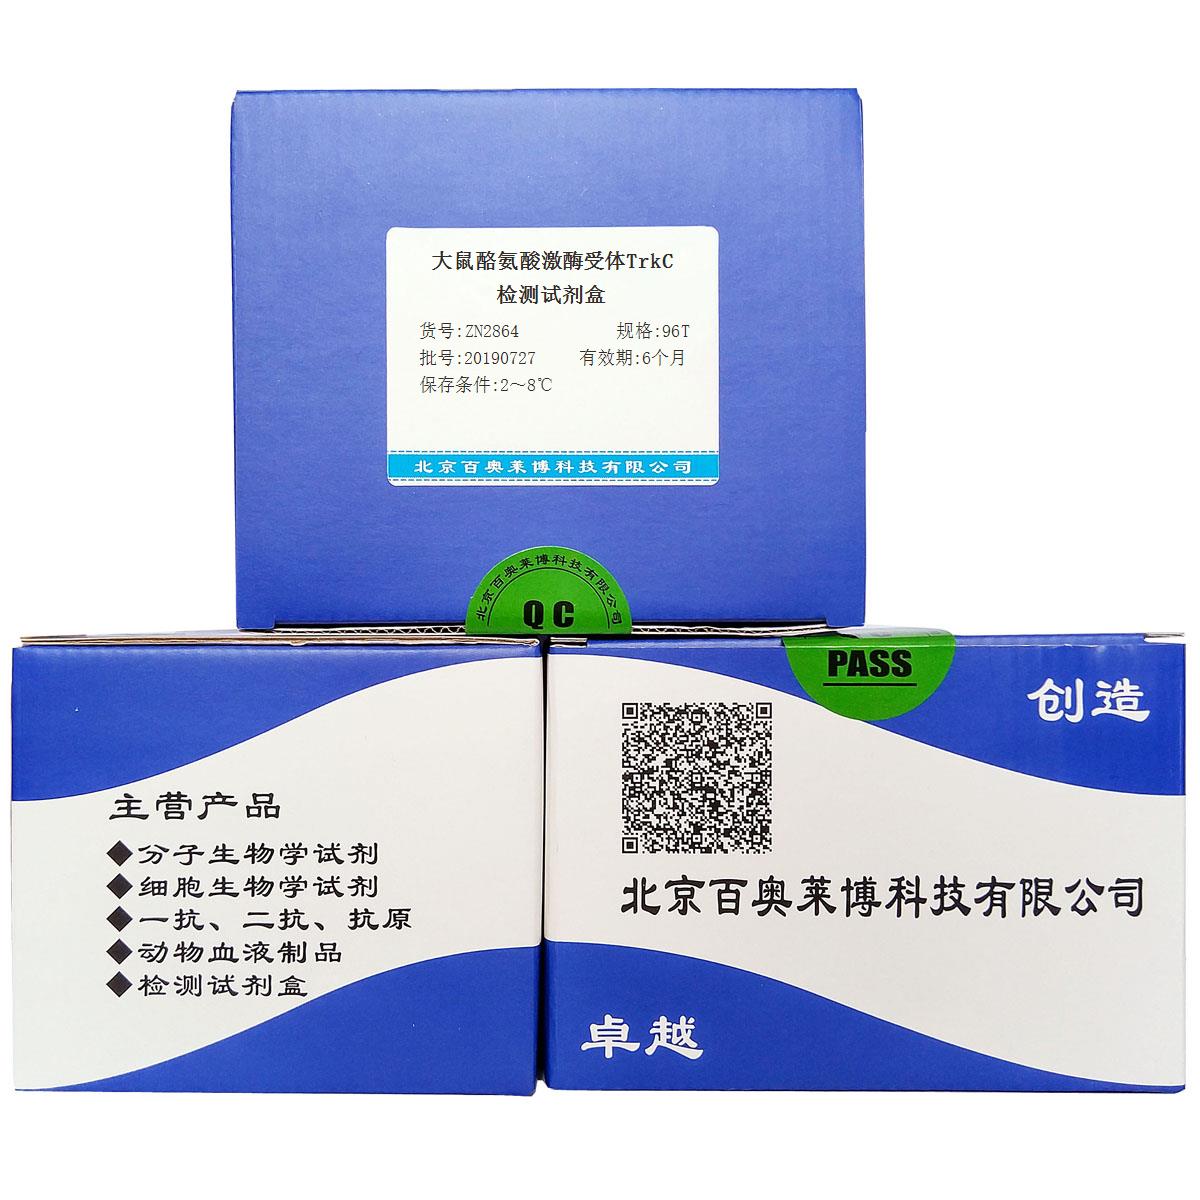 大鼠酪氨酸激酶受体TrkC检测试剂盒北京厂家